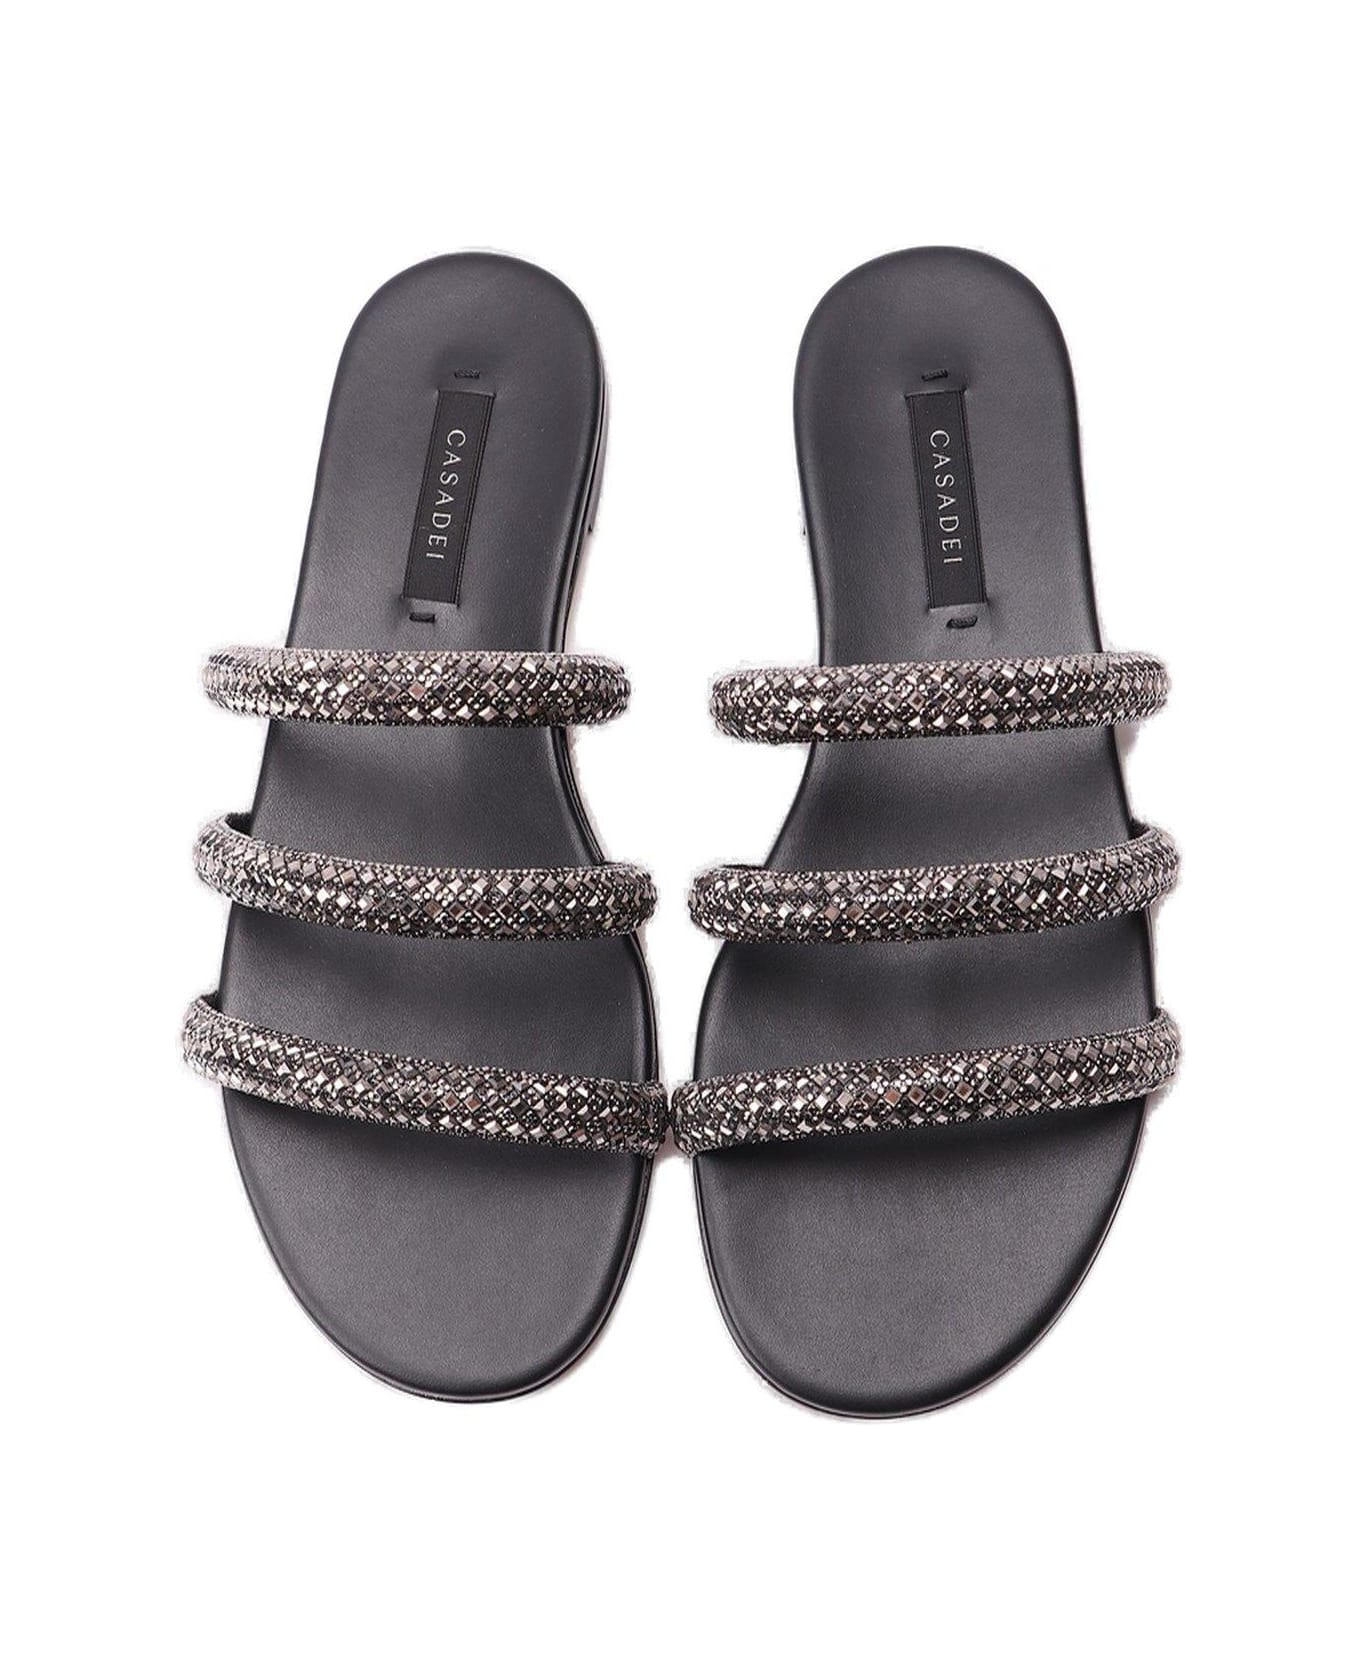 Casadei Embellished Slip-on Sandals - Ematite Nero サンダル